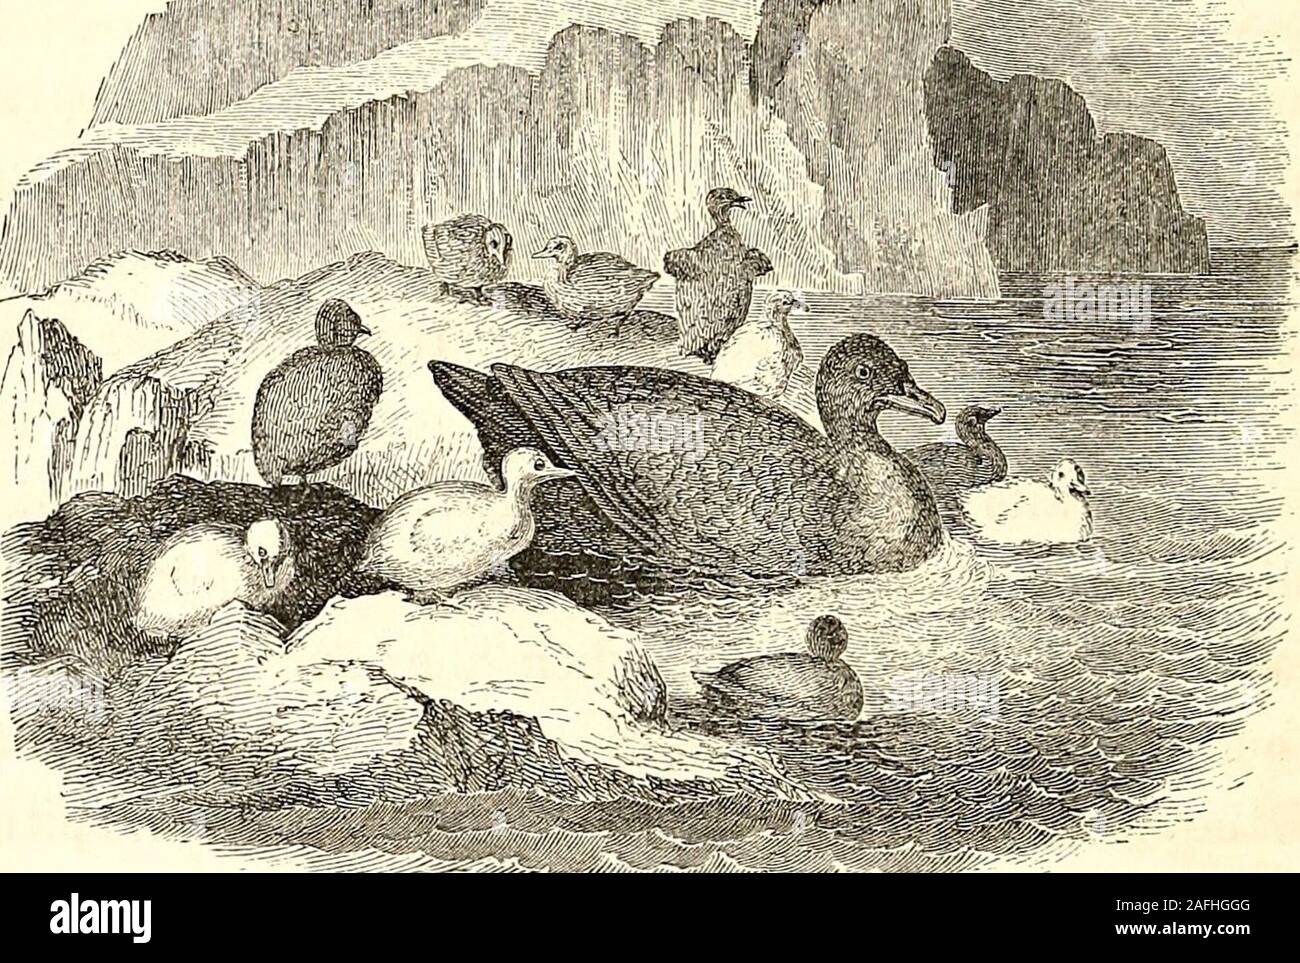 . Arktis Erkundungen: Die zweite Grinnell Expedition auf der Suche nach Sir John Franklin, 1853, '54, '55. EIDER INSEL. Es war in der Nähe der Nähe der Zucht - Saison. Thenests wurden noch durch die Mutter belegt - Vögel, aber manyof der Junge war geplatzt Die Shell, und Waren nestlingunder der Flügel, oder ihre ersten Lektionen in thewat*^ r-Pools. Einige, Fortgeschrittene, wurden bereits in der theice-schützte, Tv, gierig Warten auf die Shell-fishand Seeigel, die den alten Vogel beschäftigte sich inprocuring für Sie. Der KORMORAN GULL. 319 In der Nähe war eine niedrige und isolierte Rock - Band, die wecalled Hans Isla Stockfoto